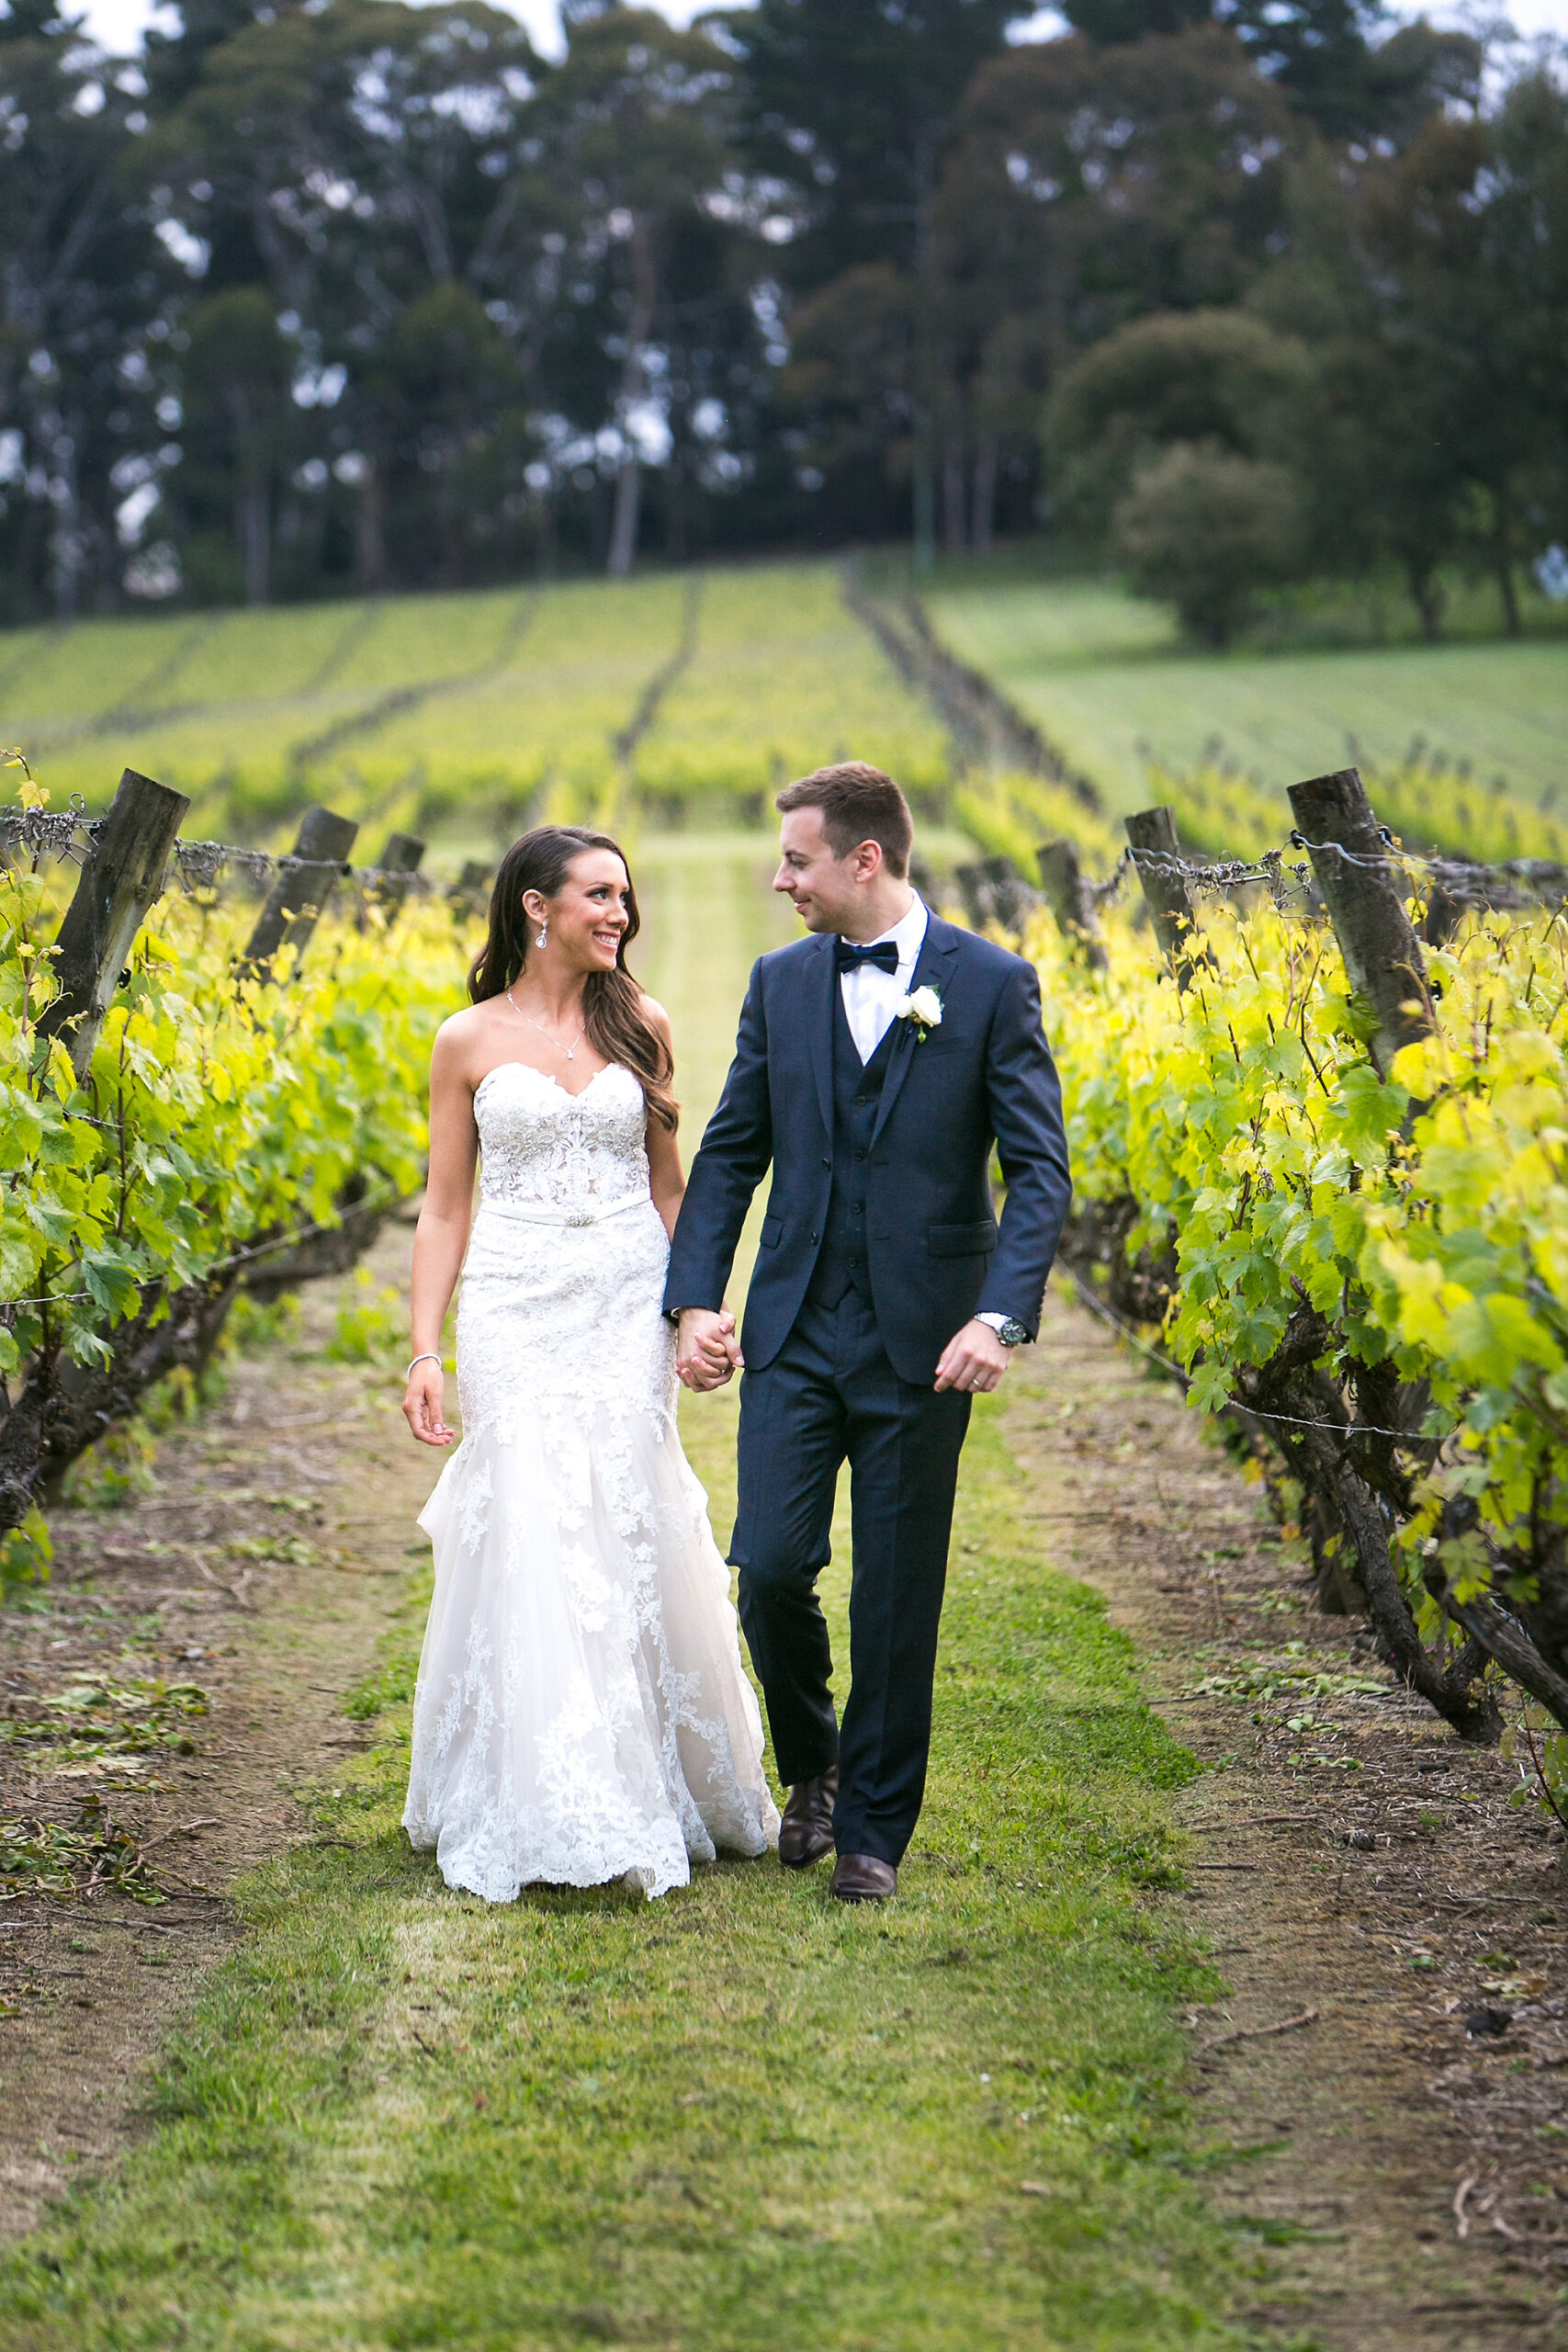 Caroline_George_Rustic-Vineyard-Wedding_Dansk-Photography_SBS_043